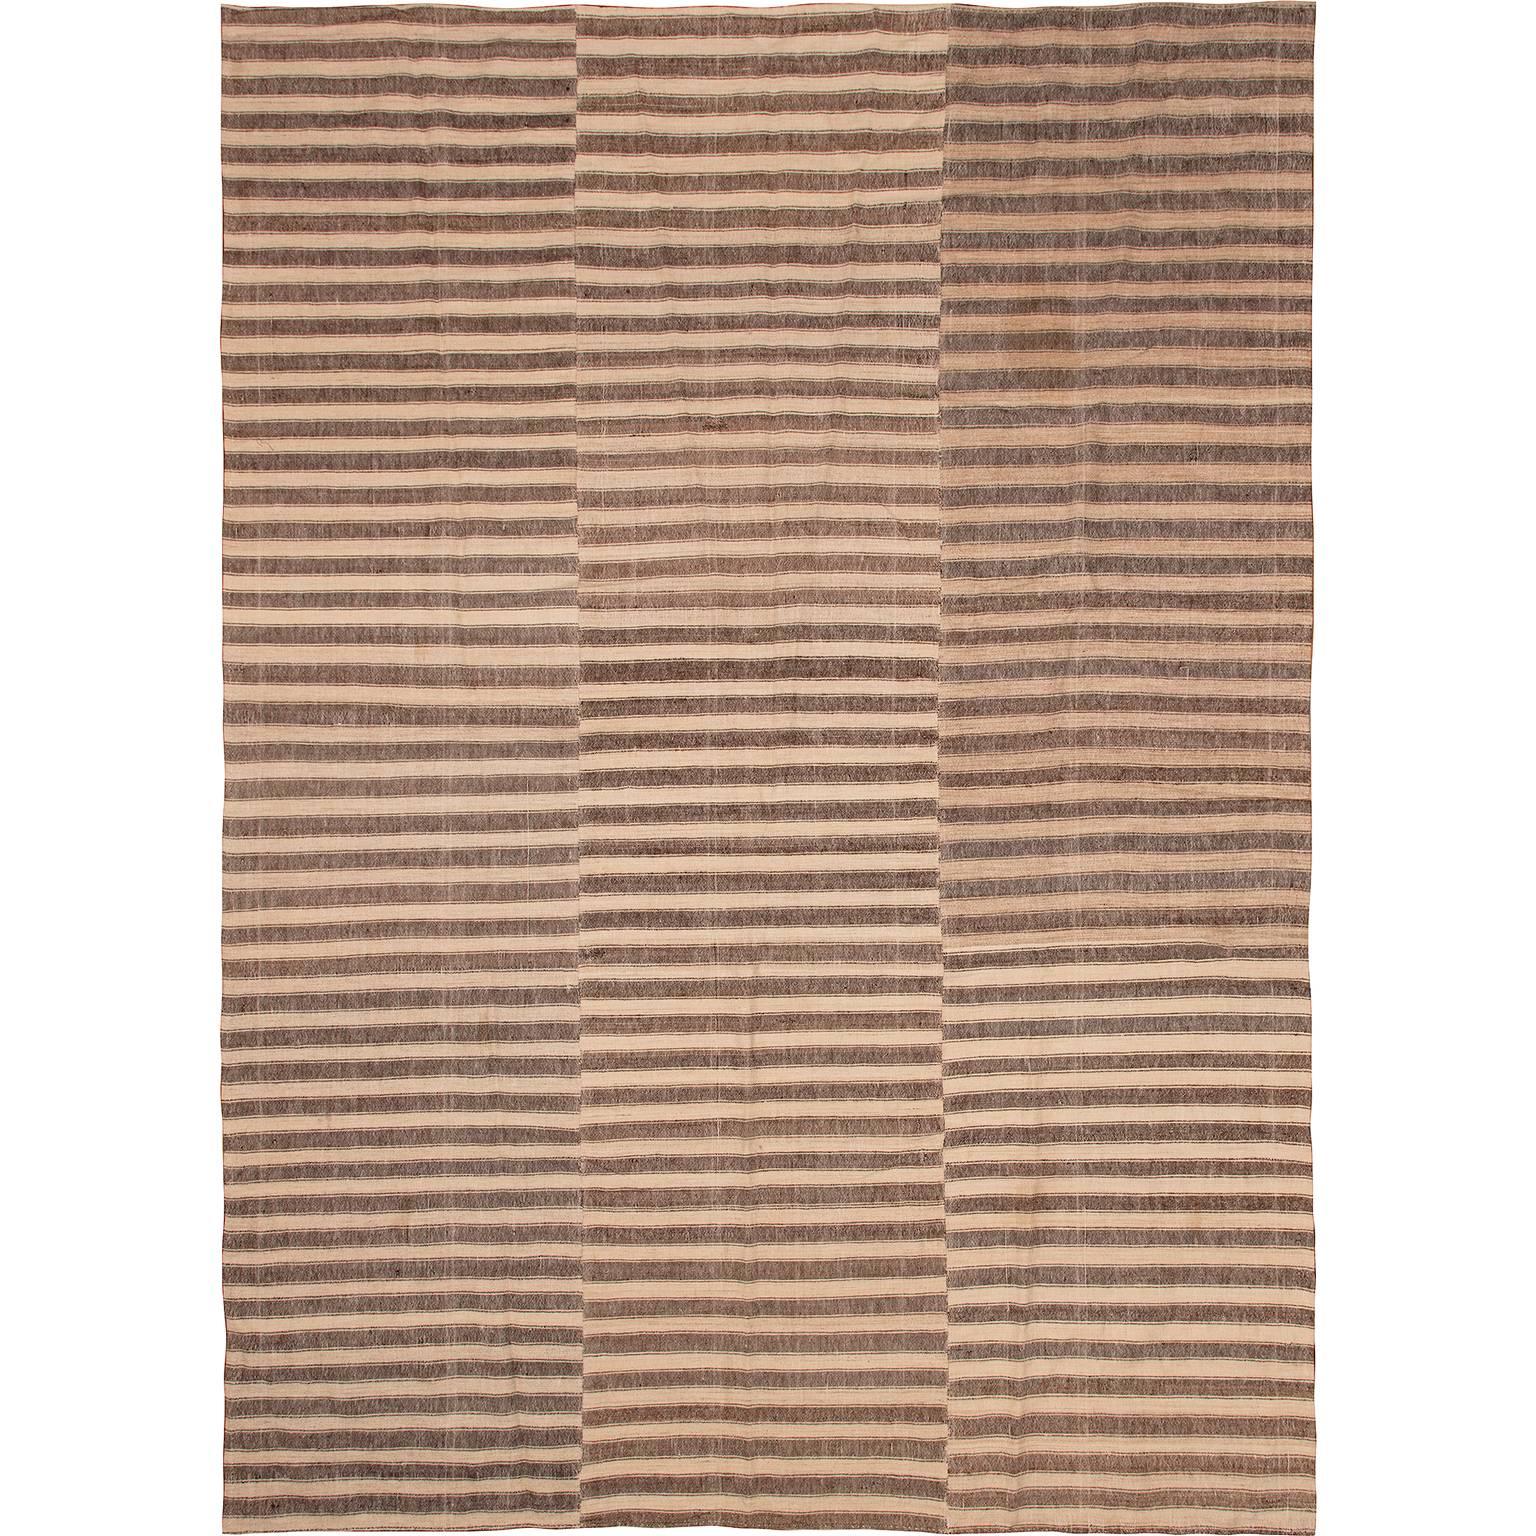 Light Brown Vintage Mazandaran style rug For Sale